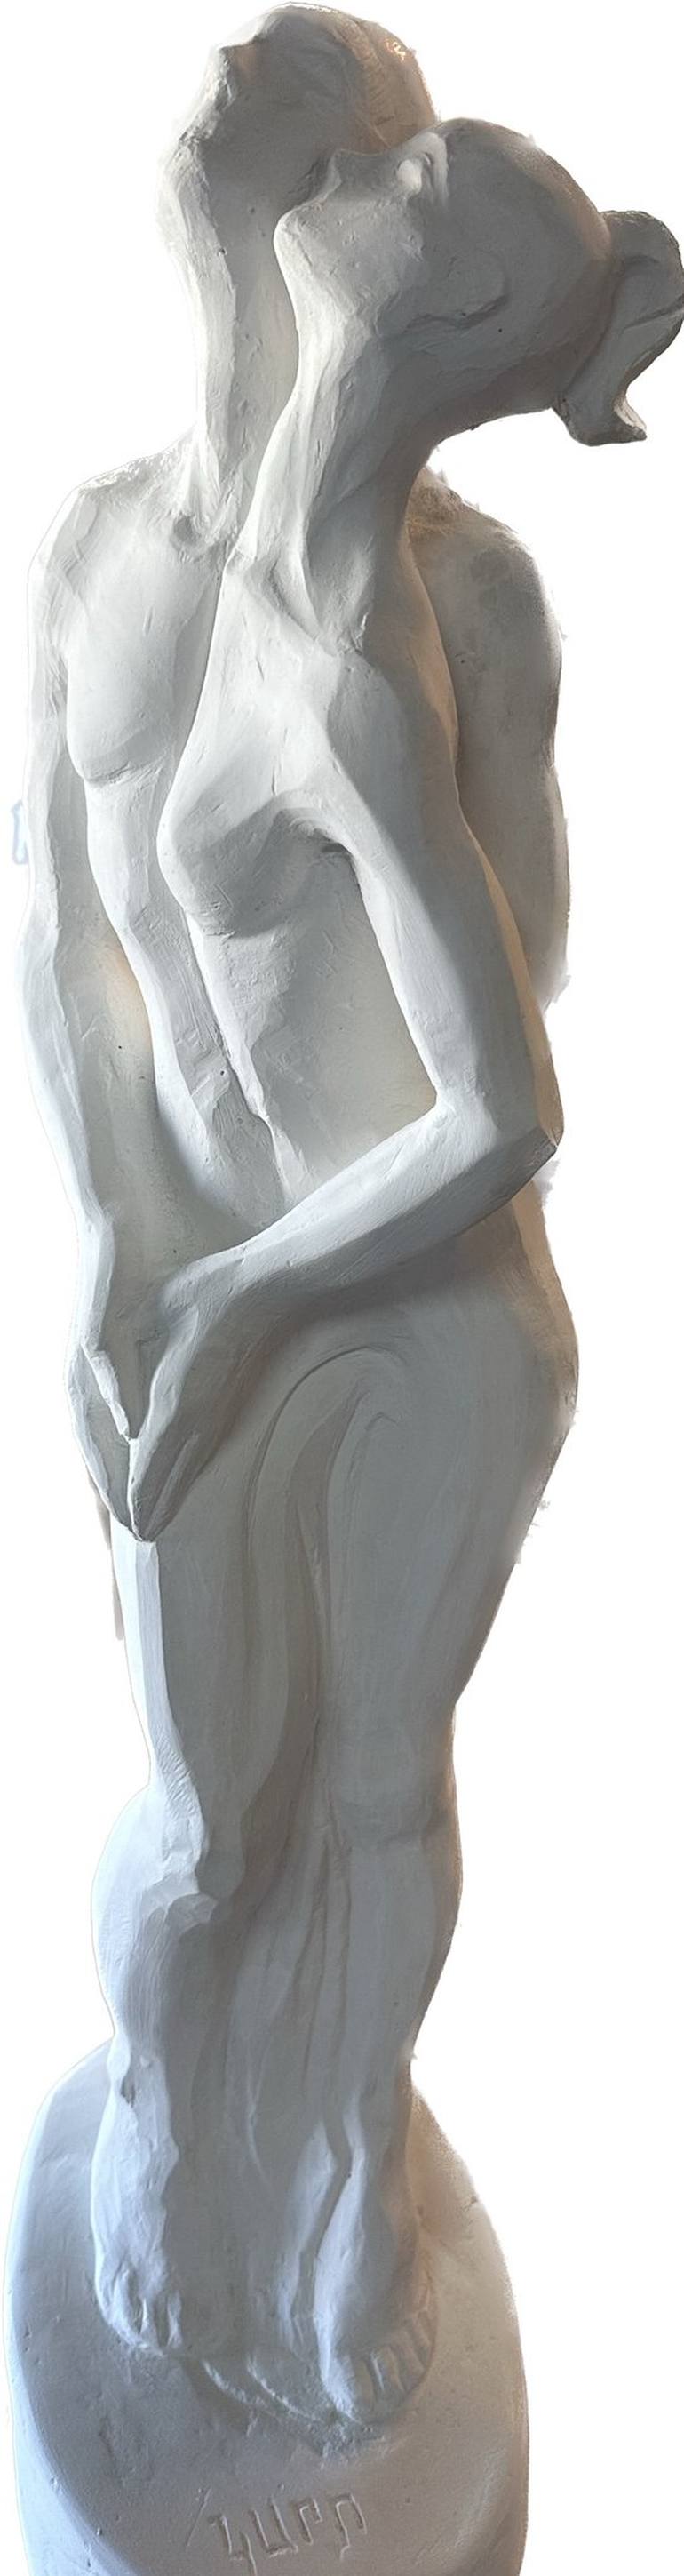 Original 3d Sculpture Body Sculpture by Karapet Balakeseryan